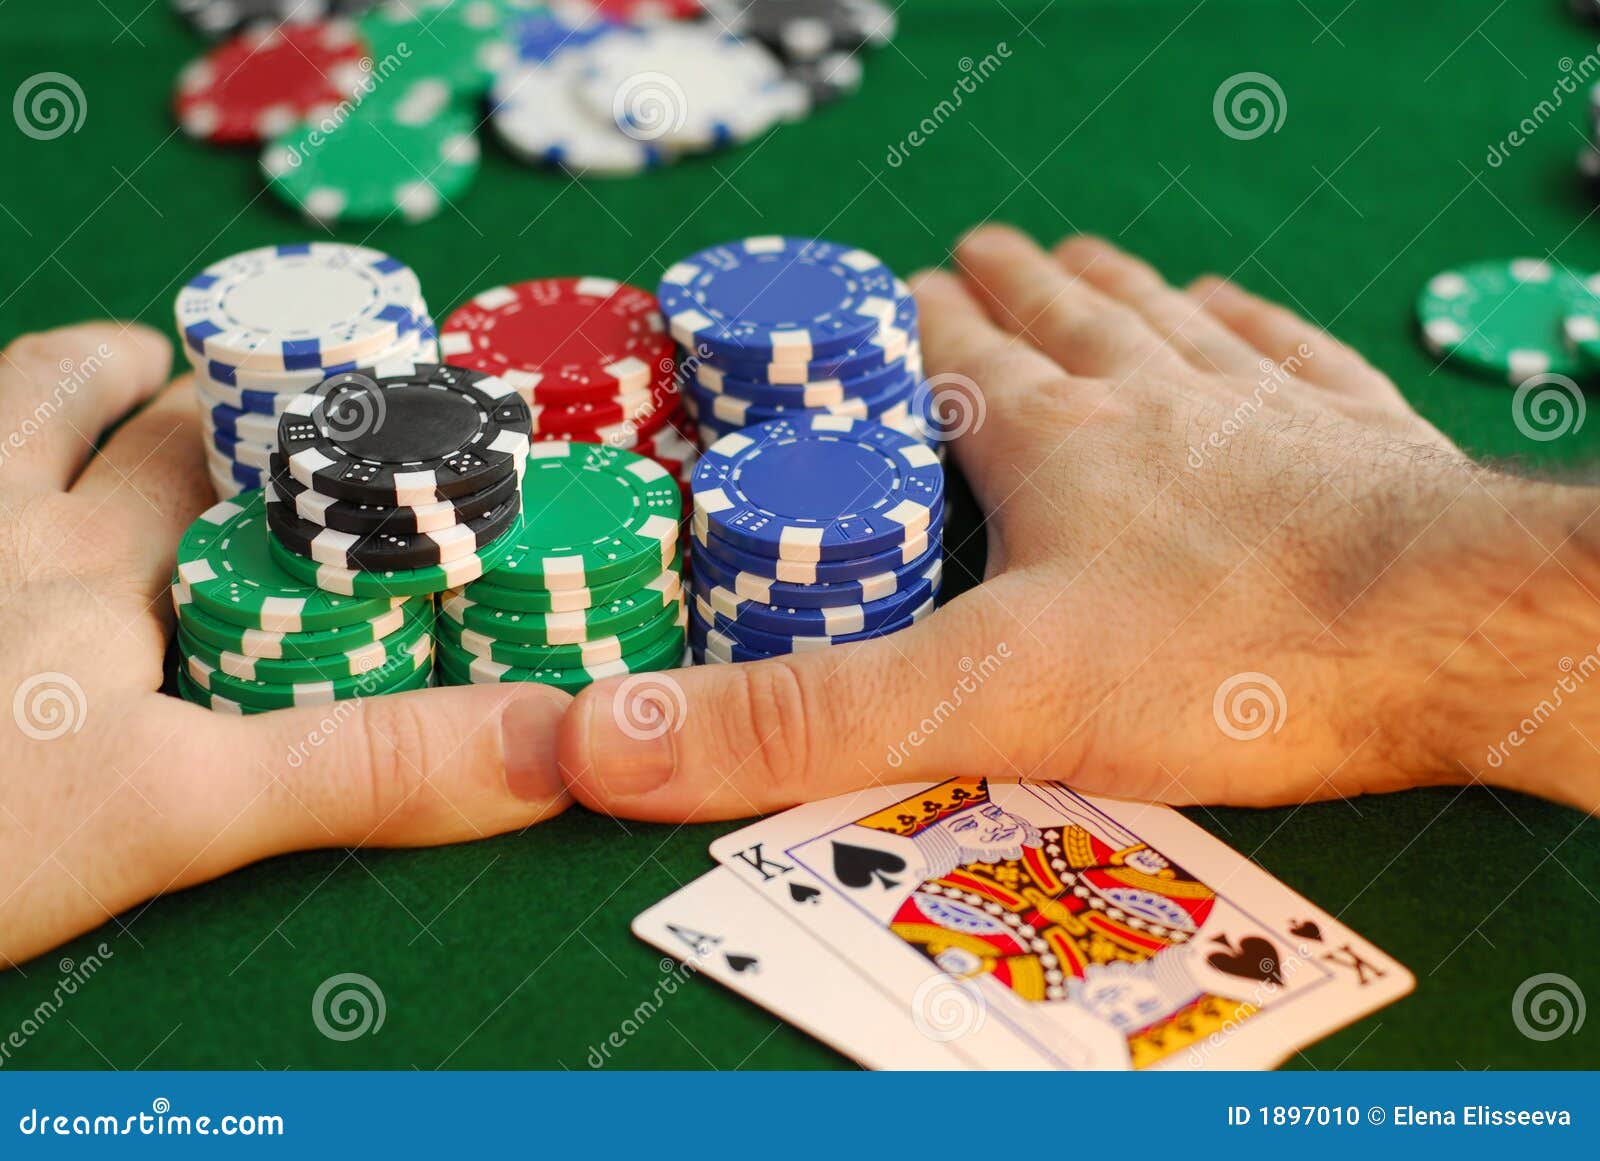 Все игры казино елена казино онлайн лохотрон